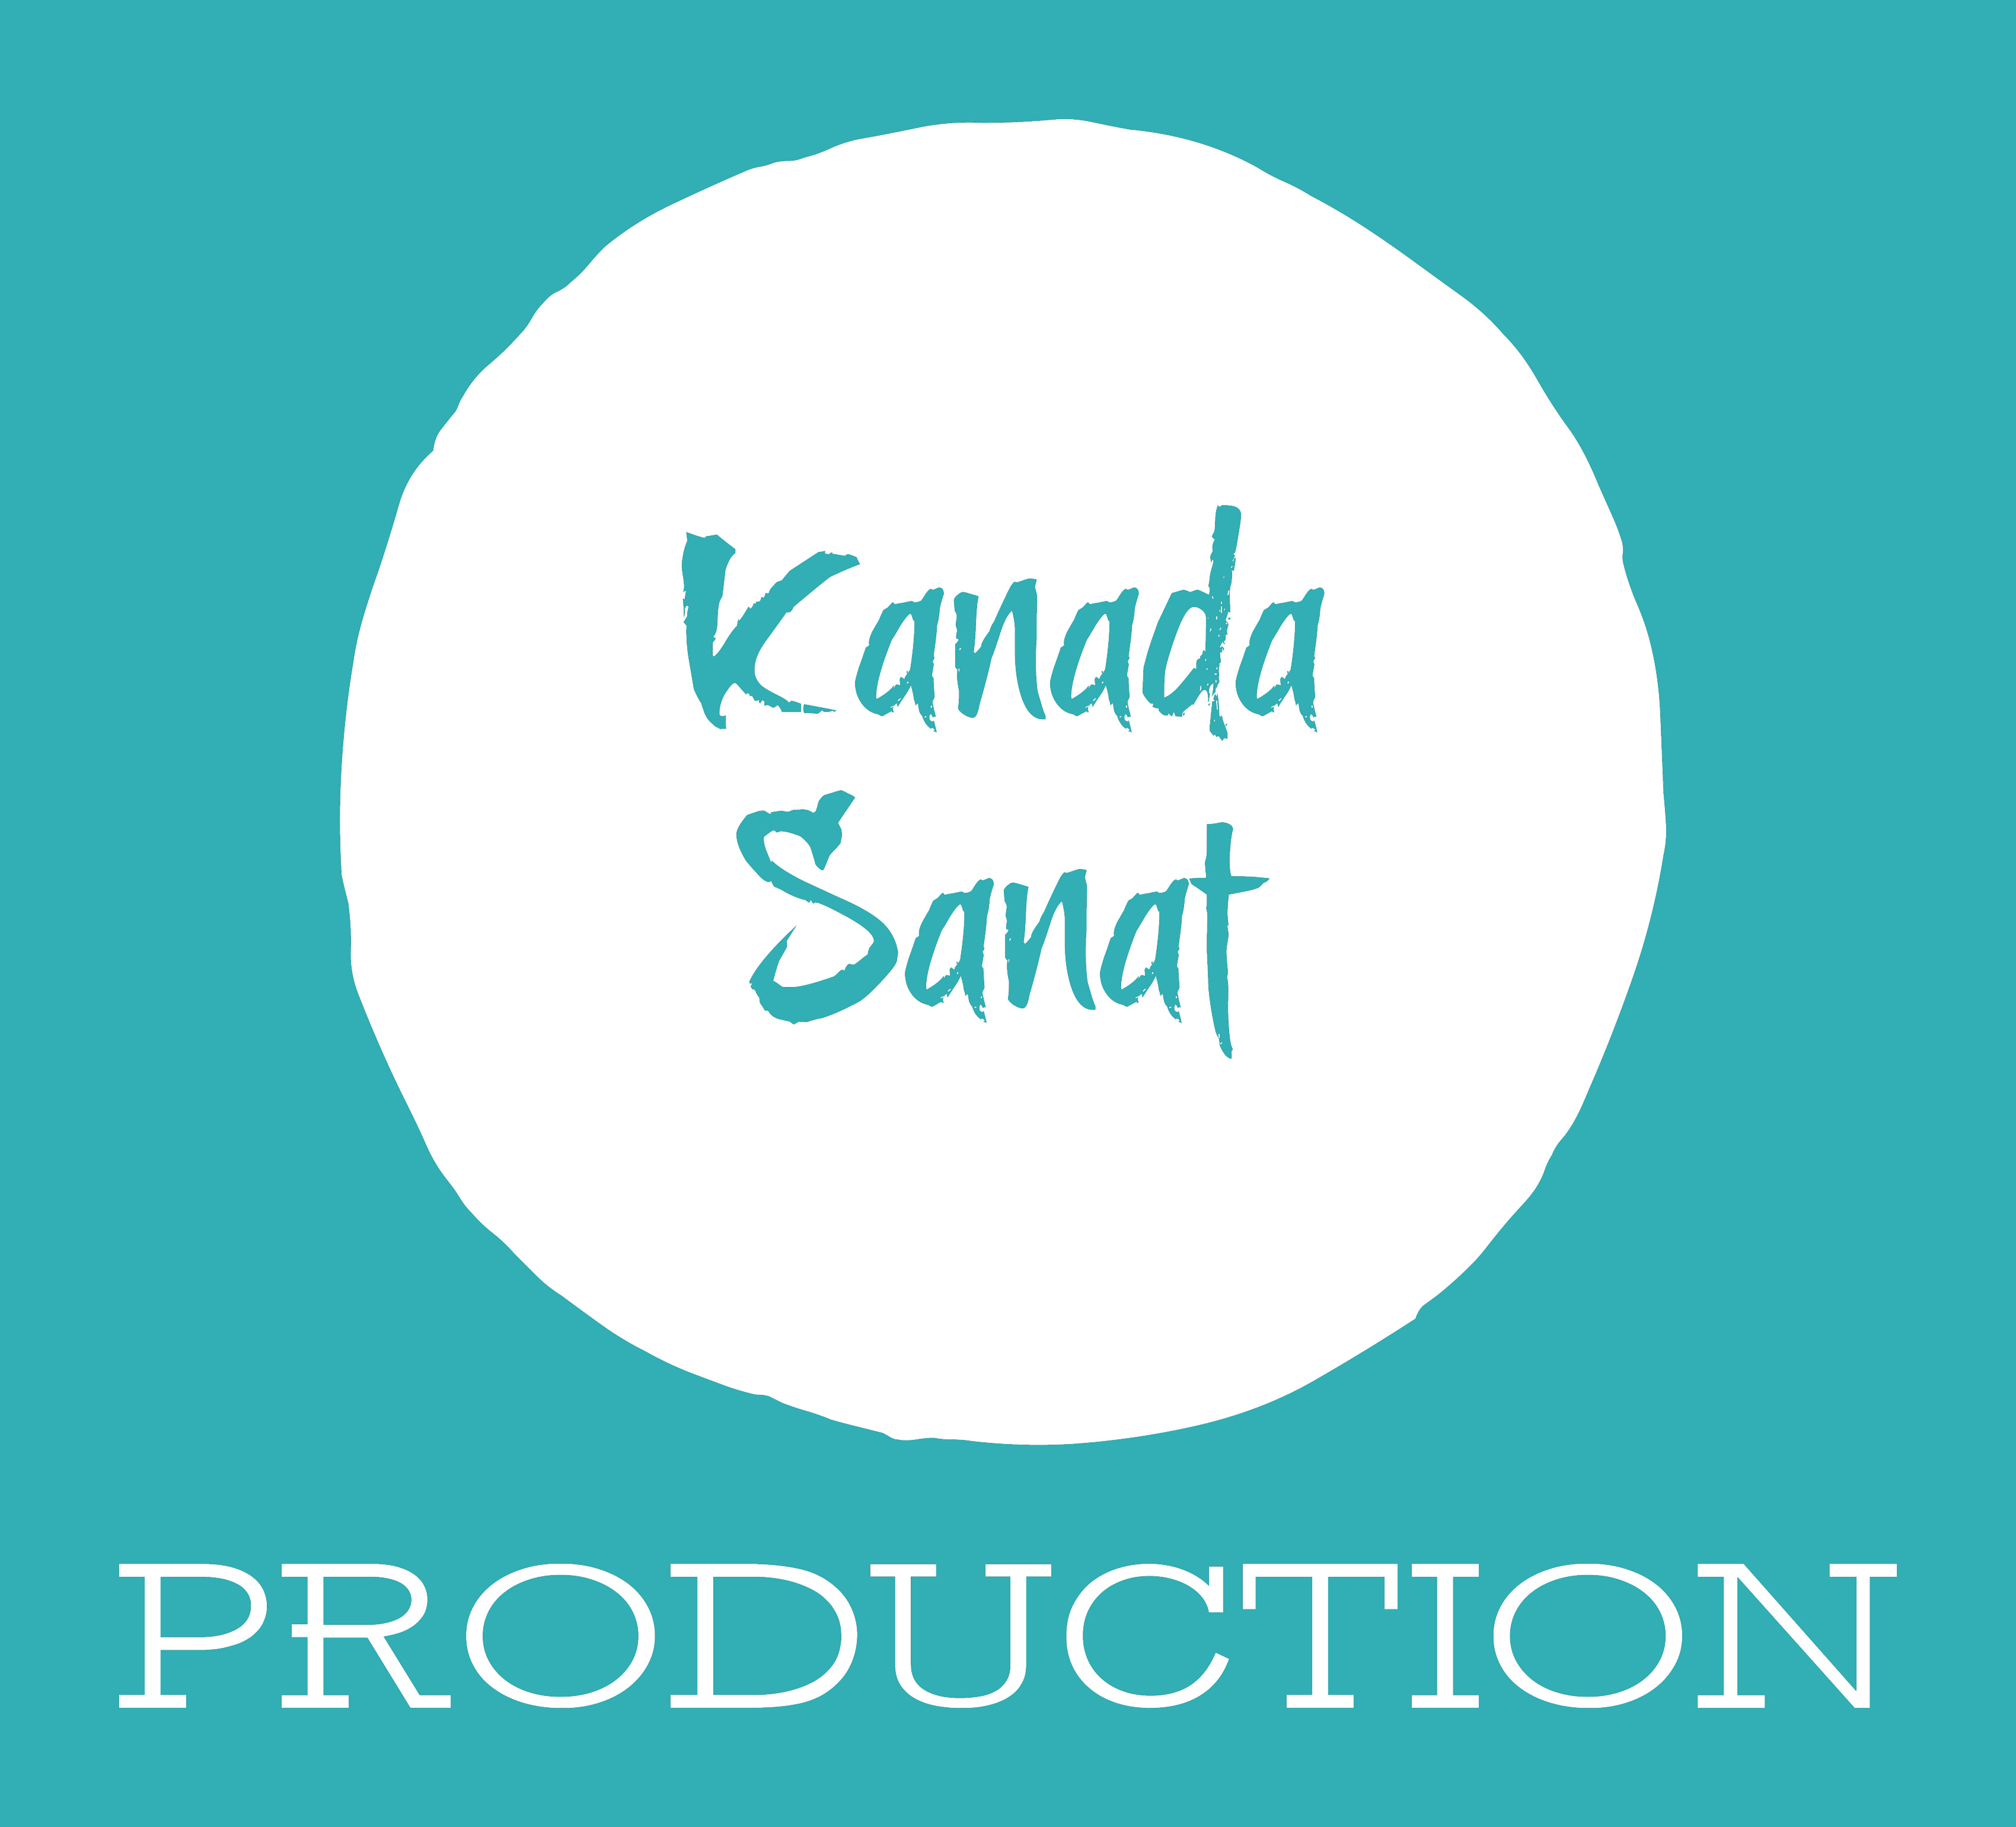 Kanada Sanat Production